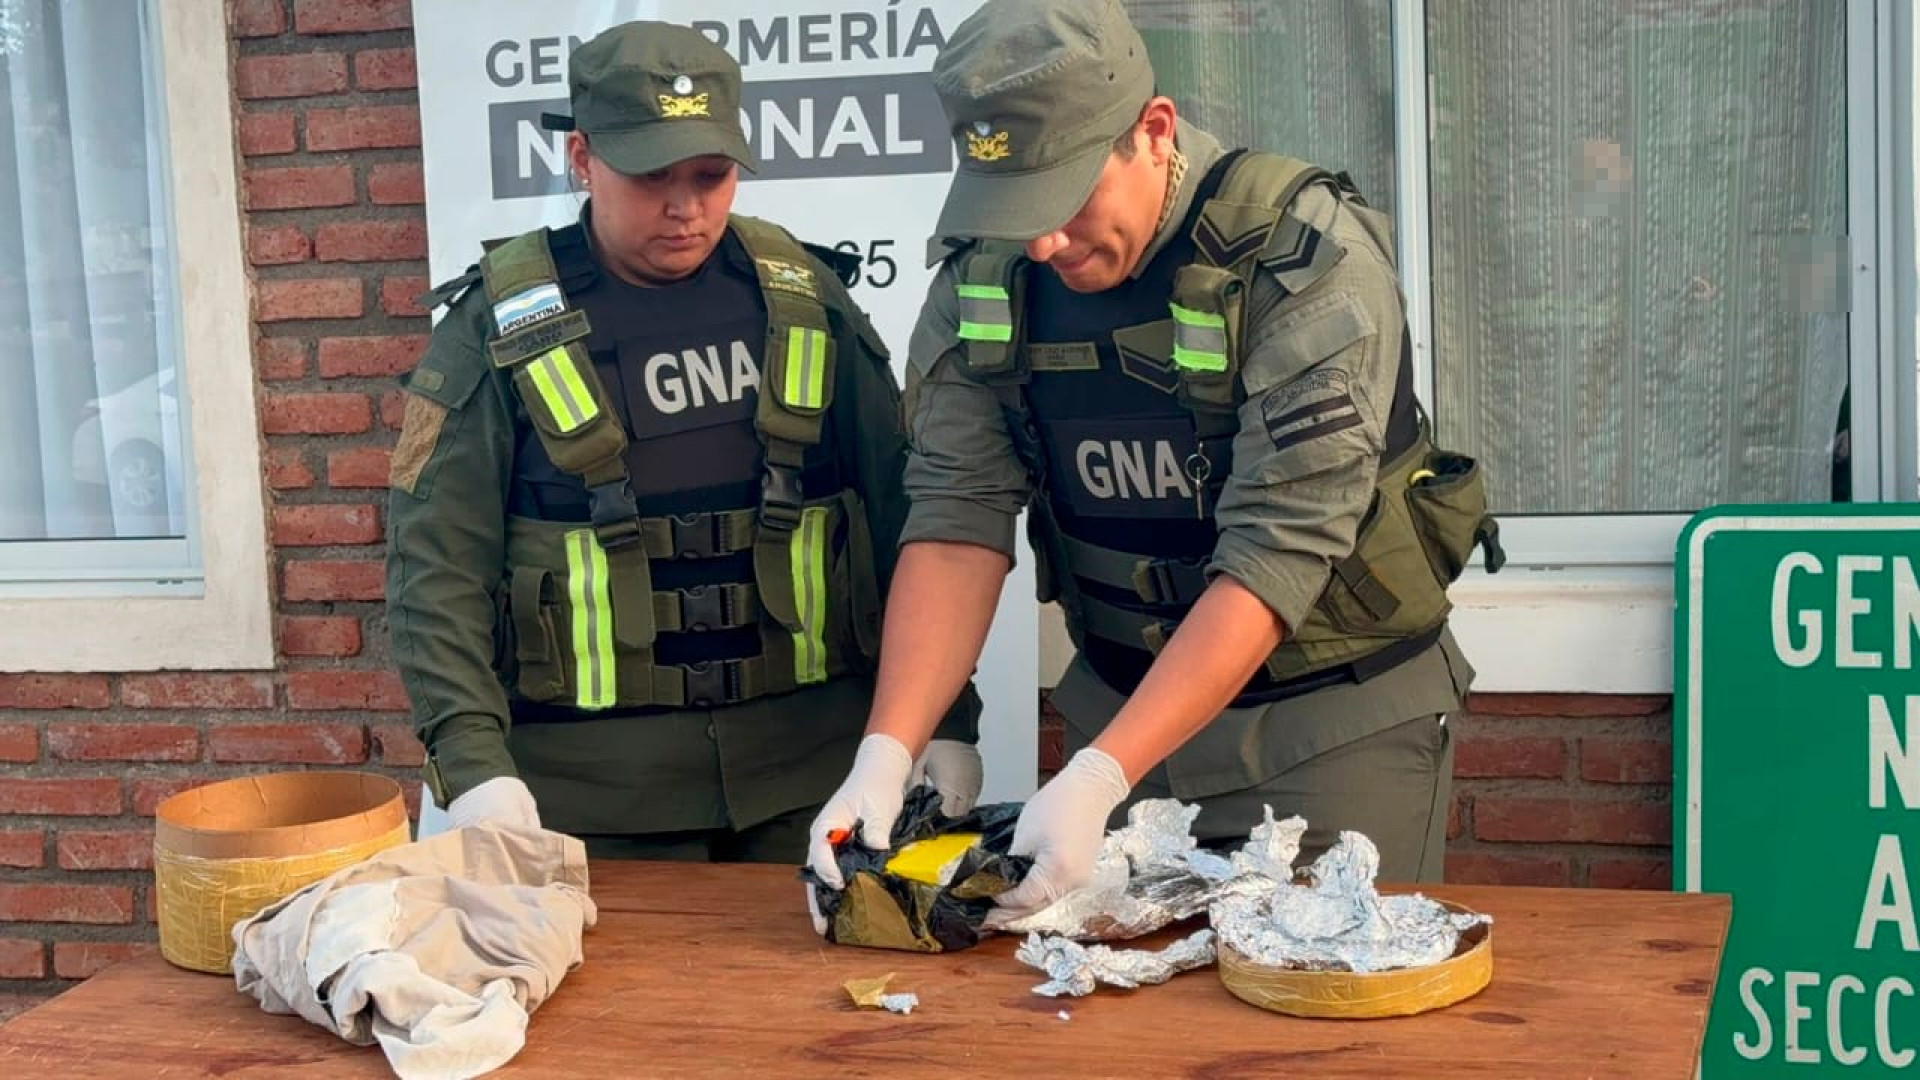 noticiaspuertosantacruz.com.ar - Imagen extraida de: https://argentina.gob.ar/noticias/detectaron-cocaina-dentro-de-una-encomienda-se-realizo-una-entrega-vigilada-y-dos